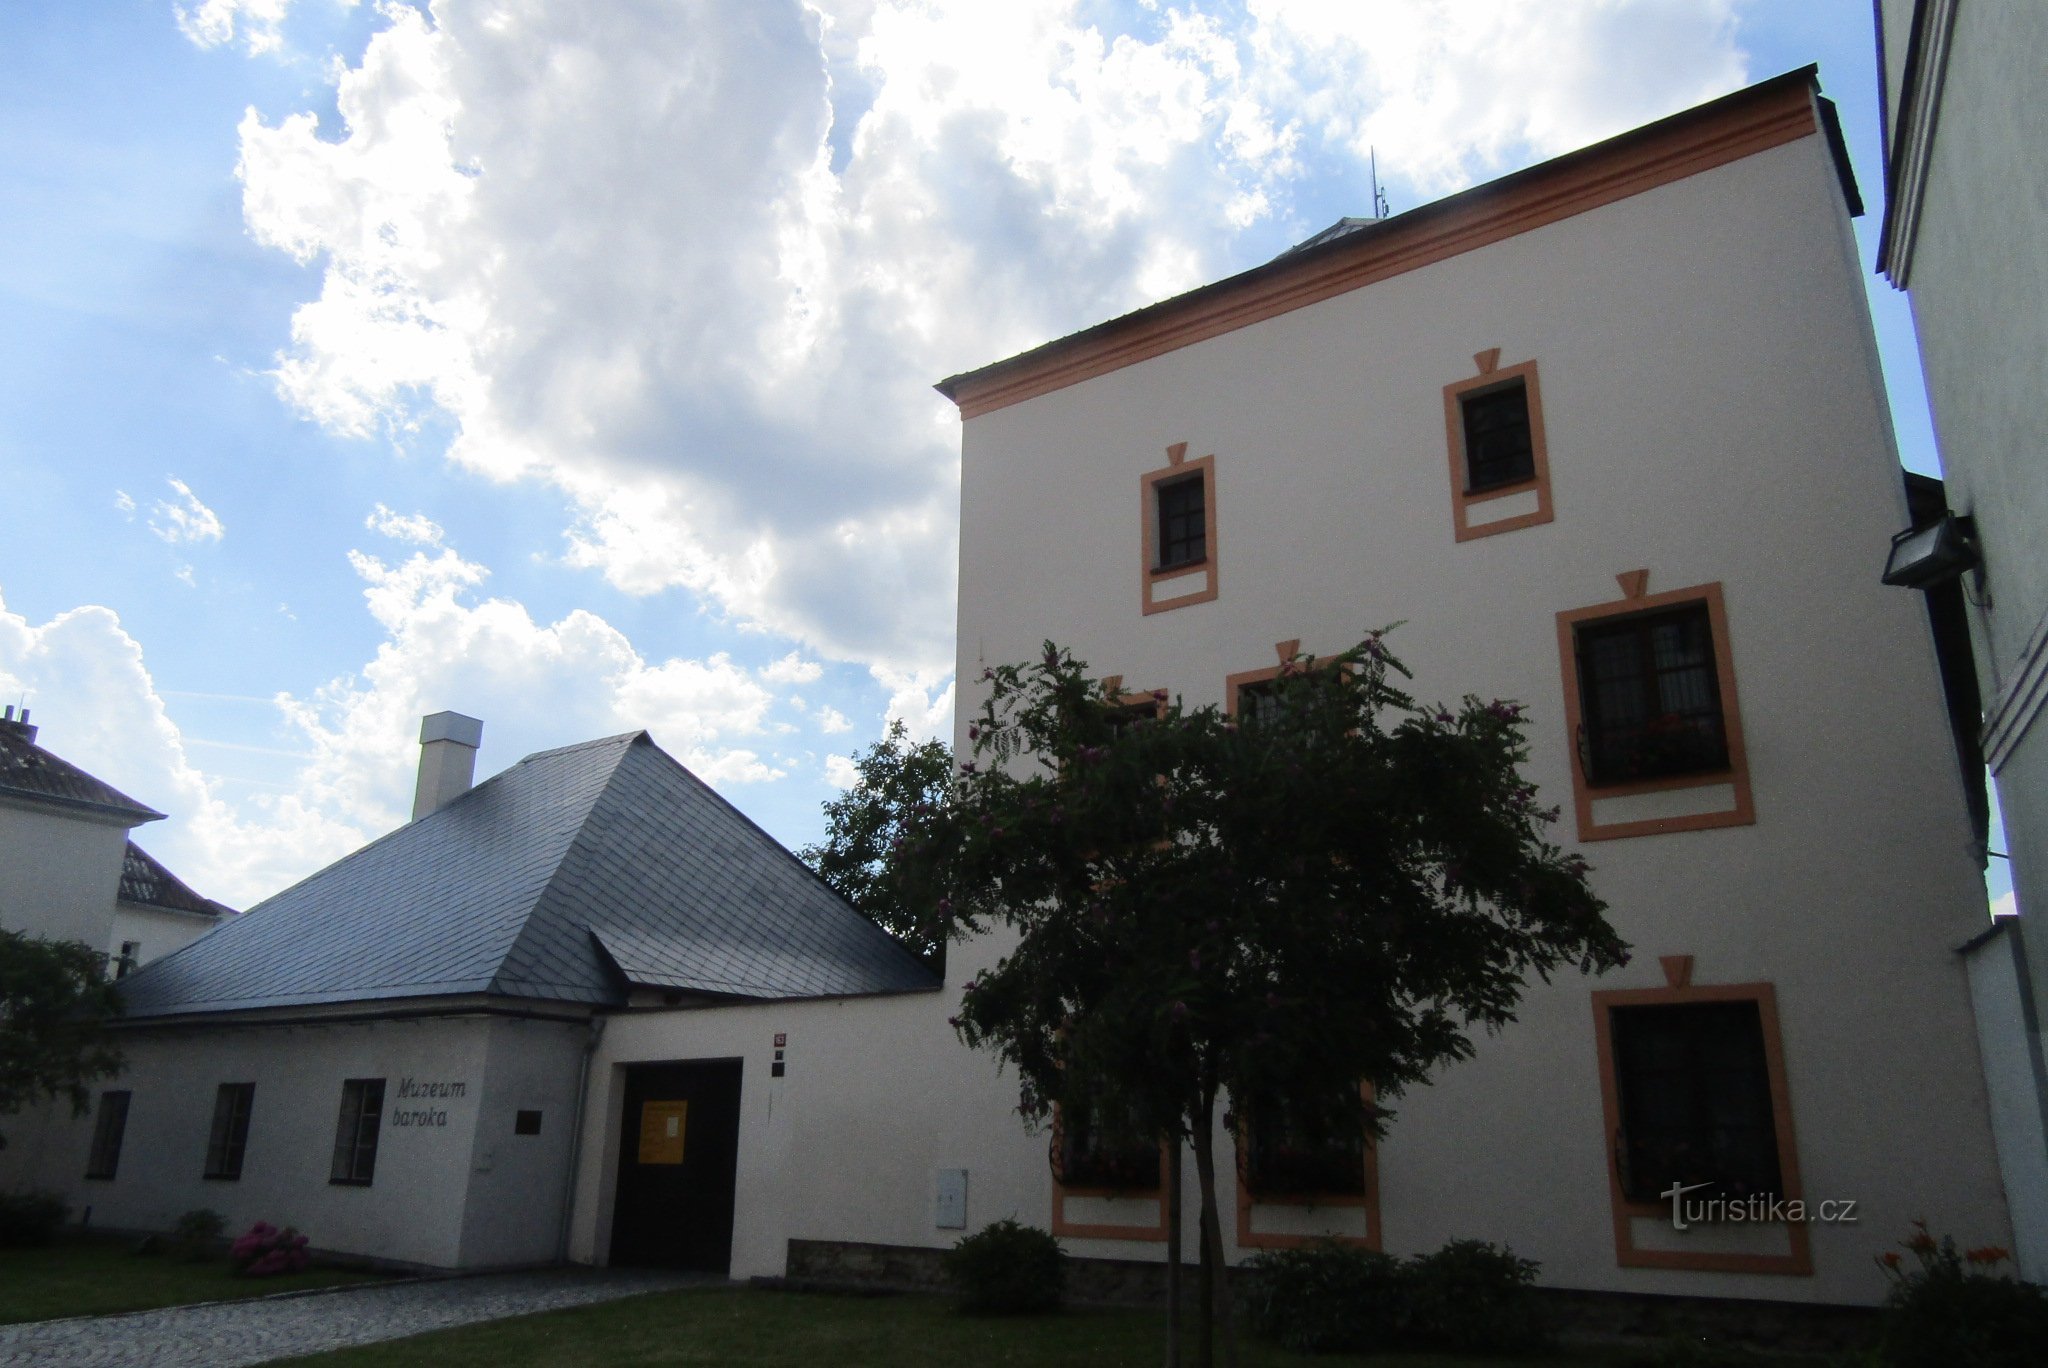 Til museet i Uničov